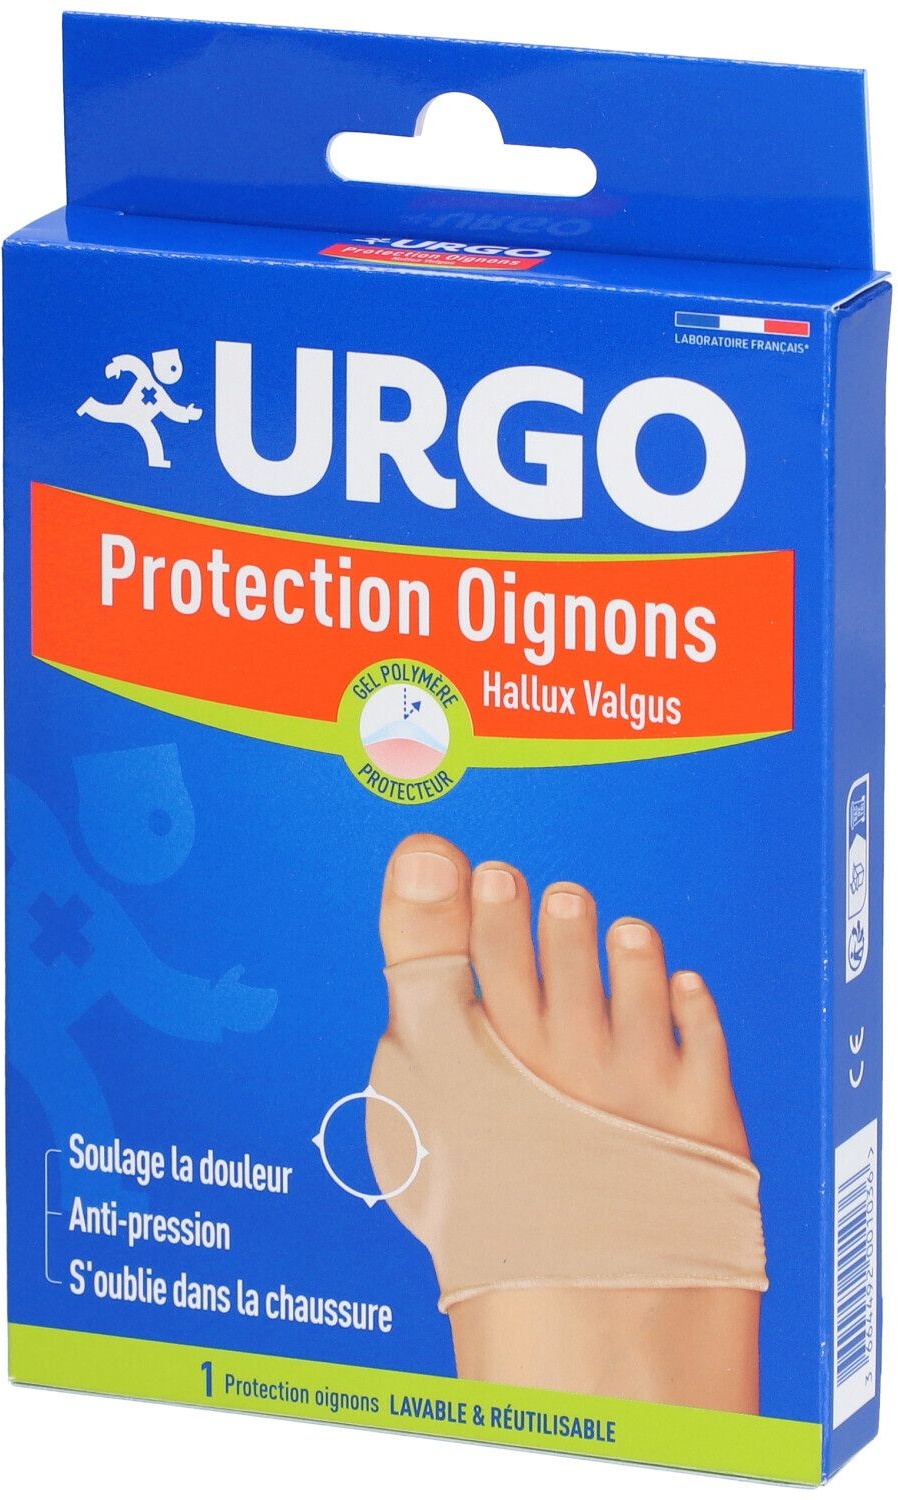 URGO Protection Oignons - Bandage de protection pour Hallux valgus 1 pc(s) bandage(s)